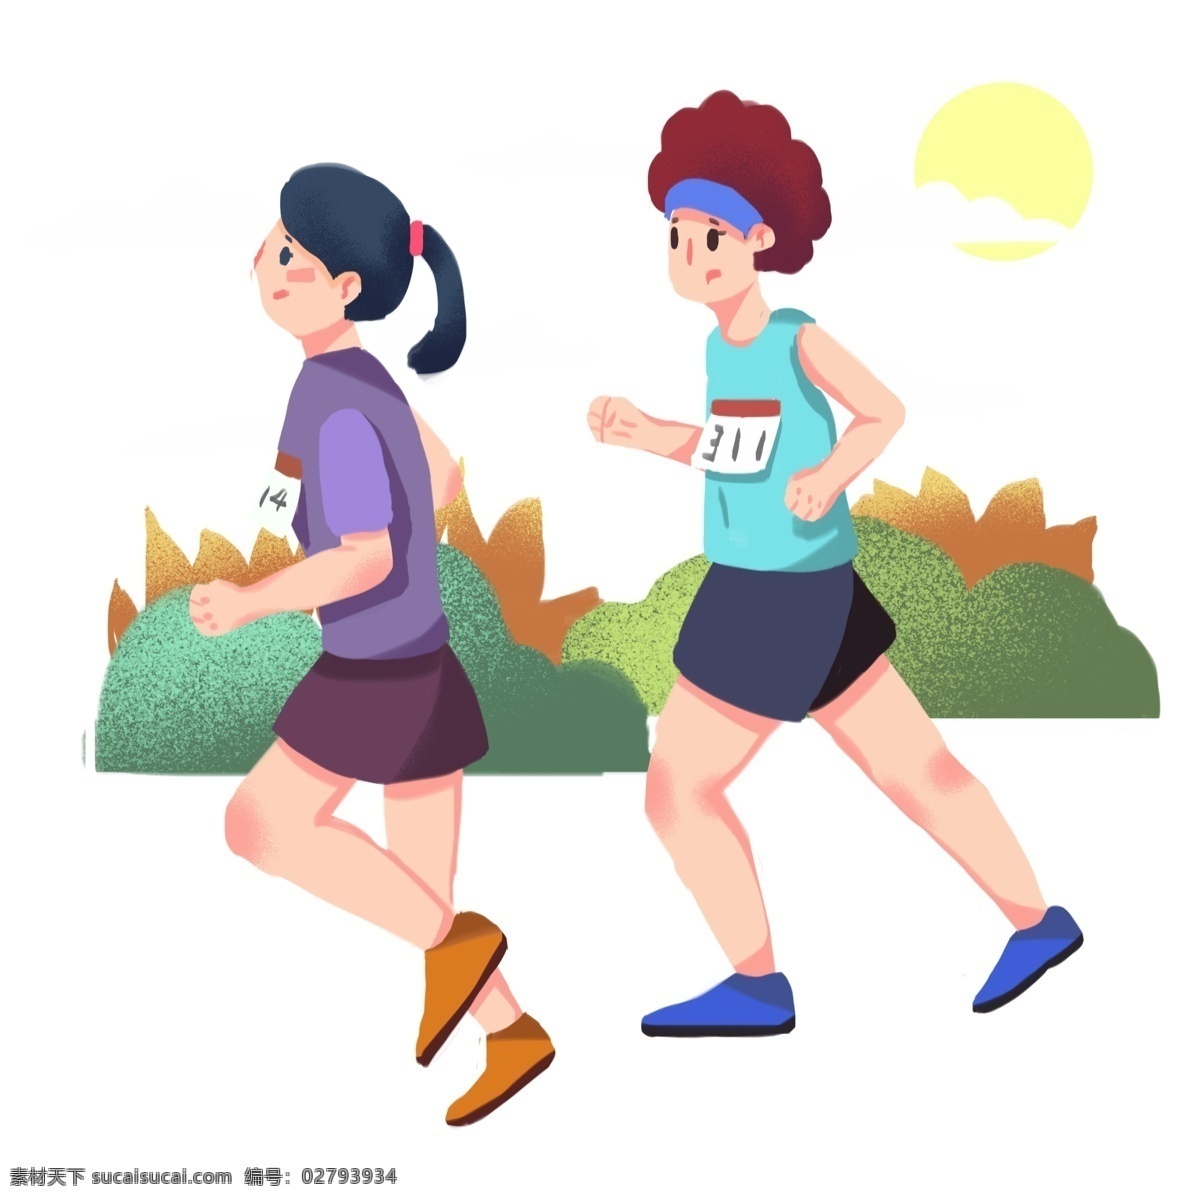 比赛 蓝色 绿色 马拉松 长跑 运动 元素 长跑比赛 体育 卡通手绘 手绘插画 手绘 板绘 插画 卡通人物 体育运动 生活 健身